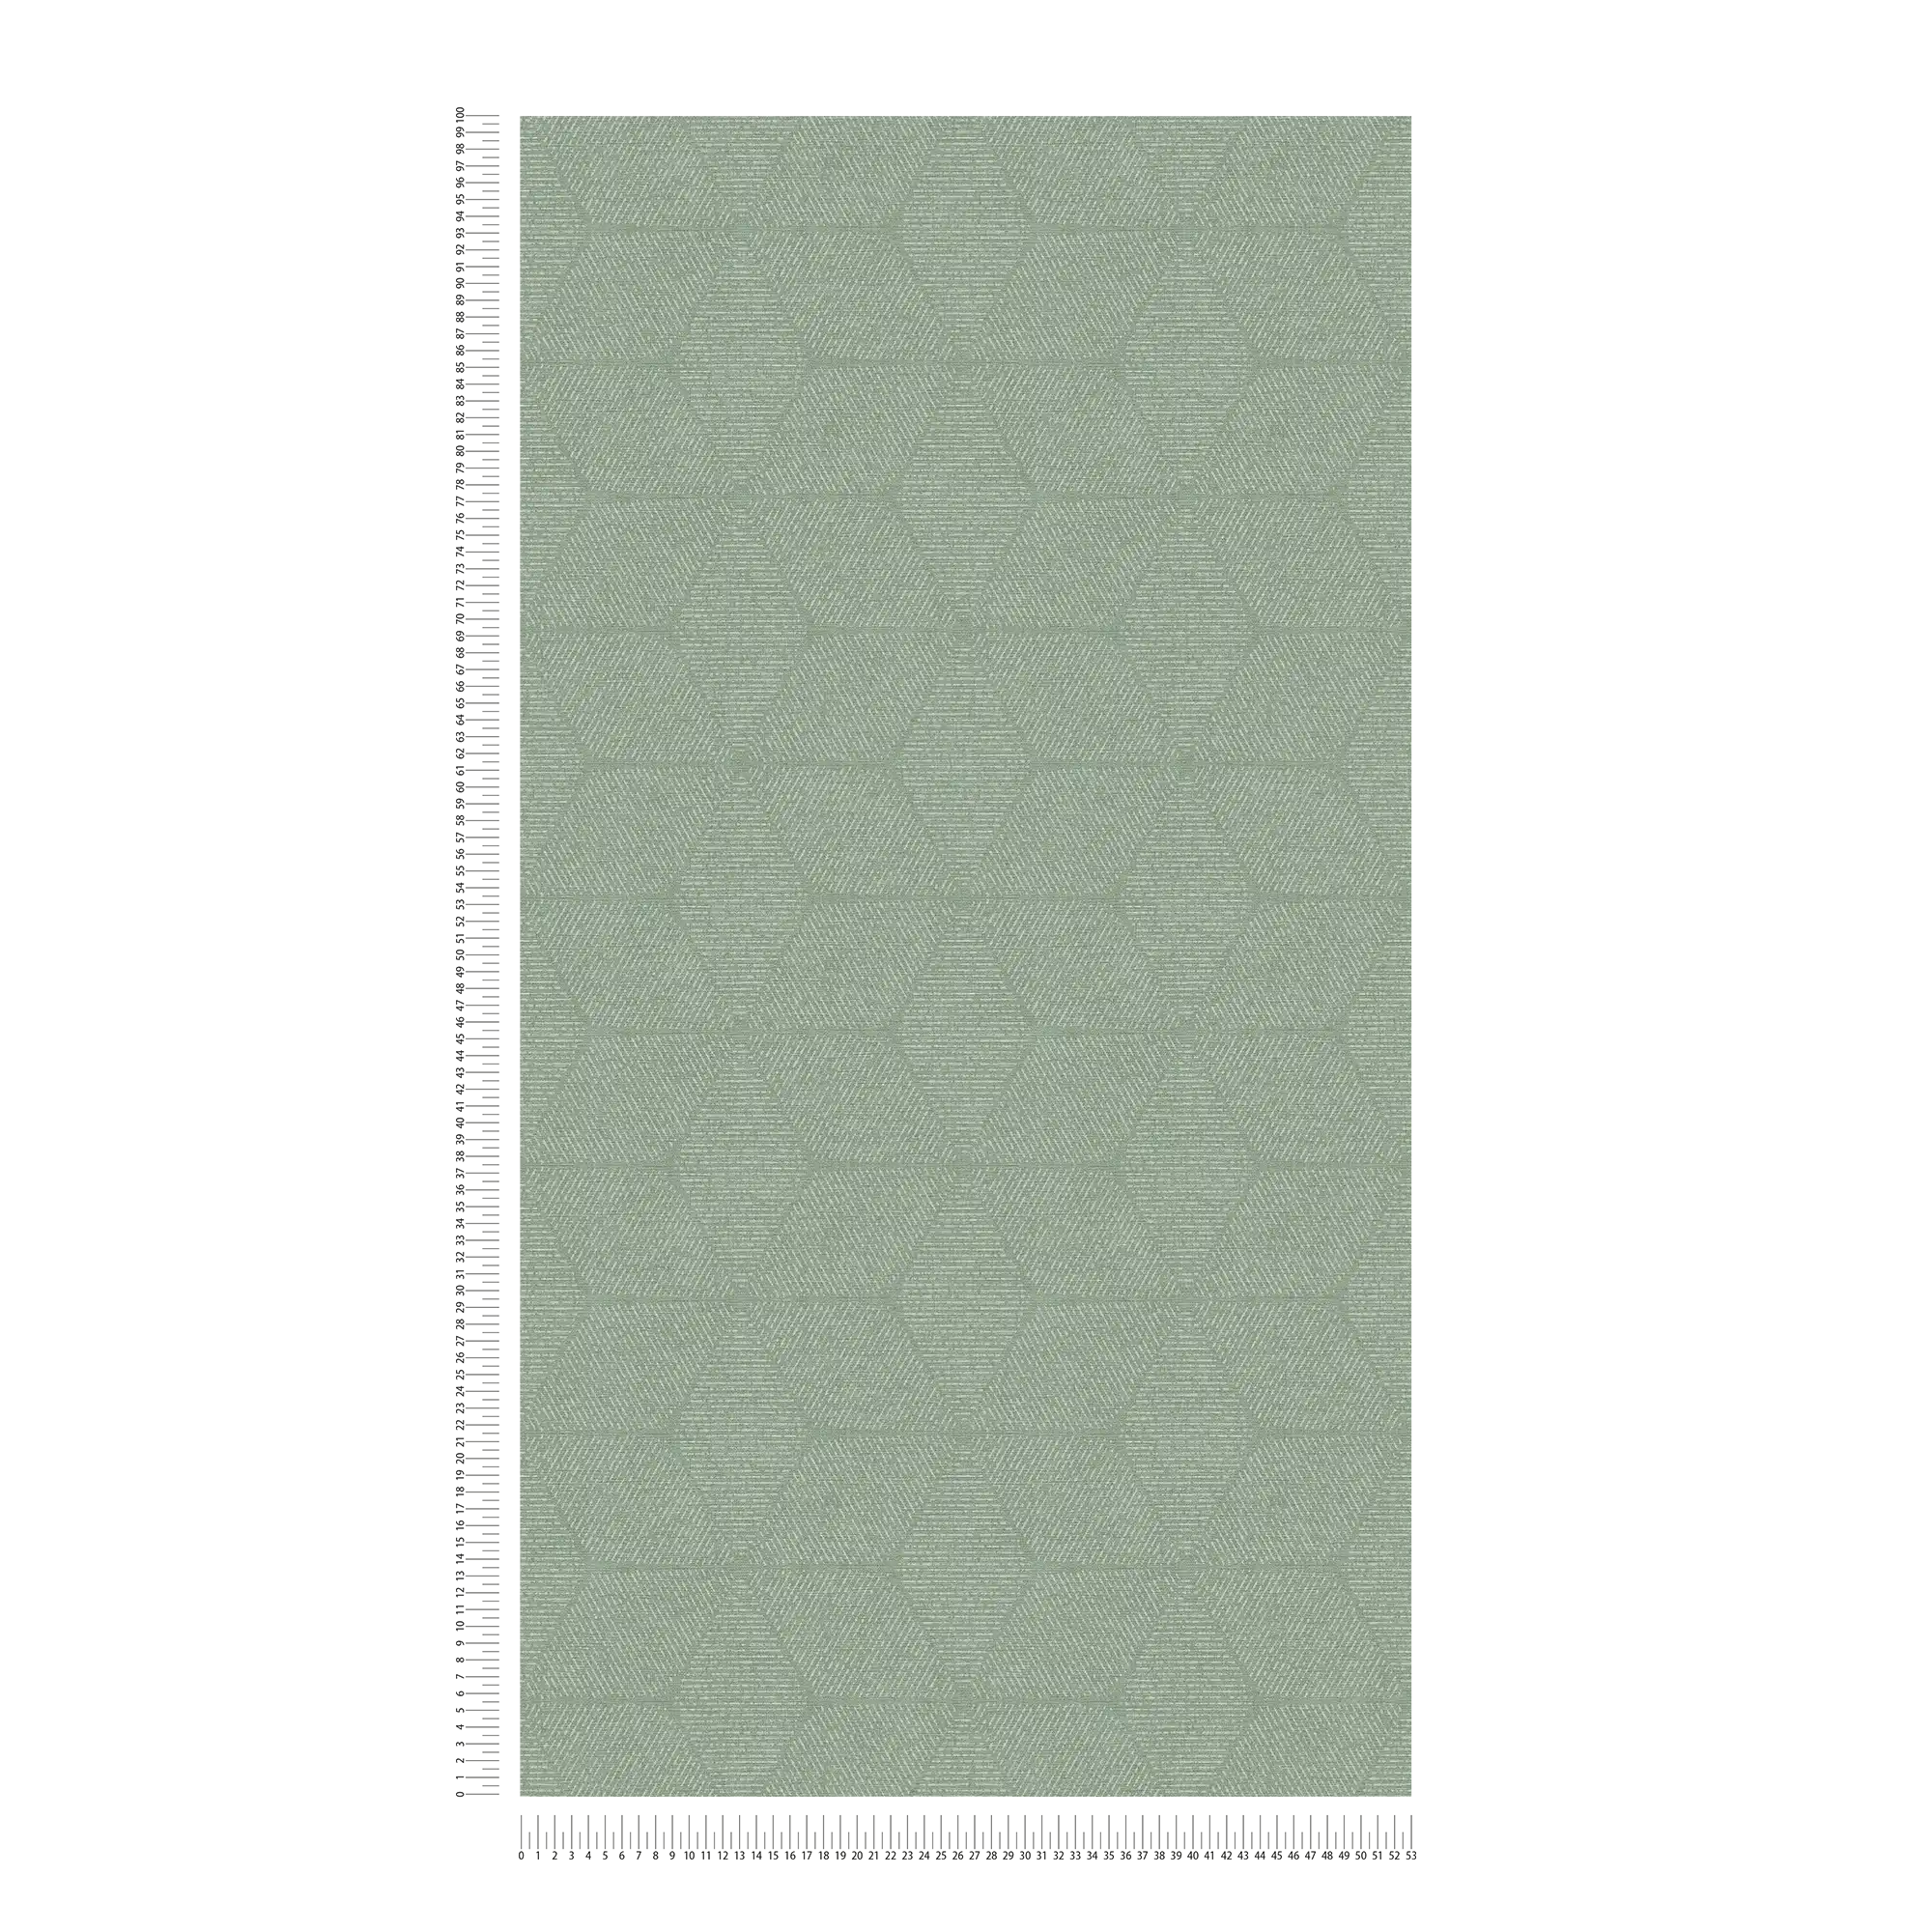             Papel pintado no tejido con motivos florales - verde, blanco
        